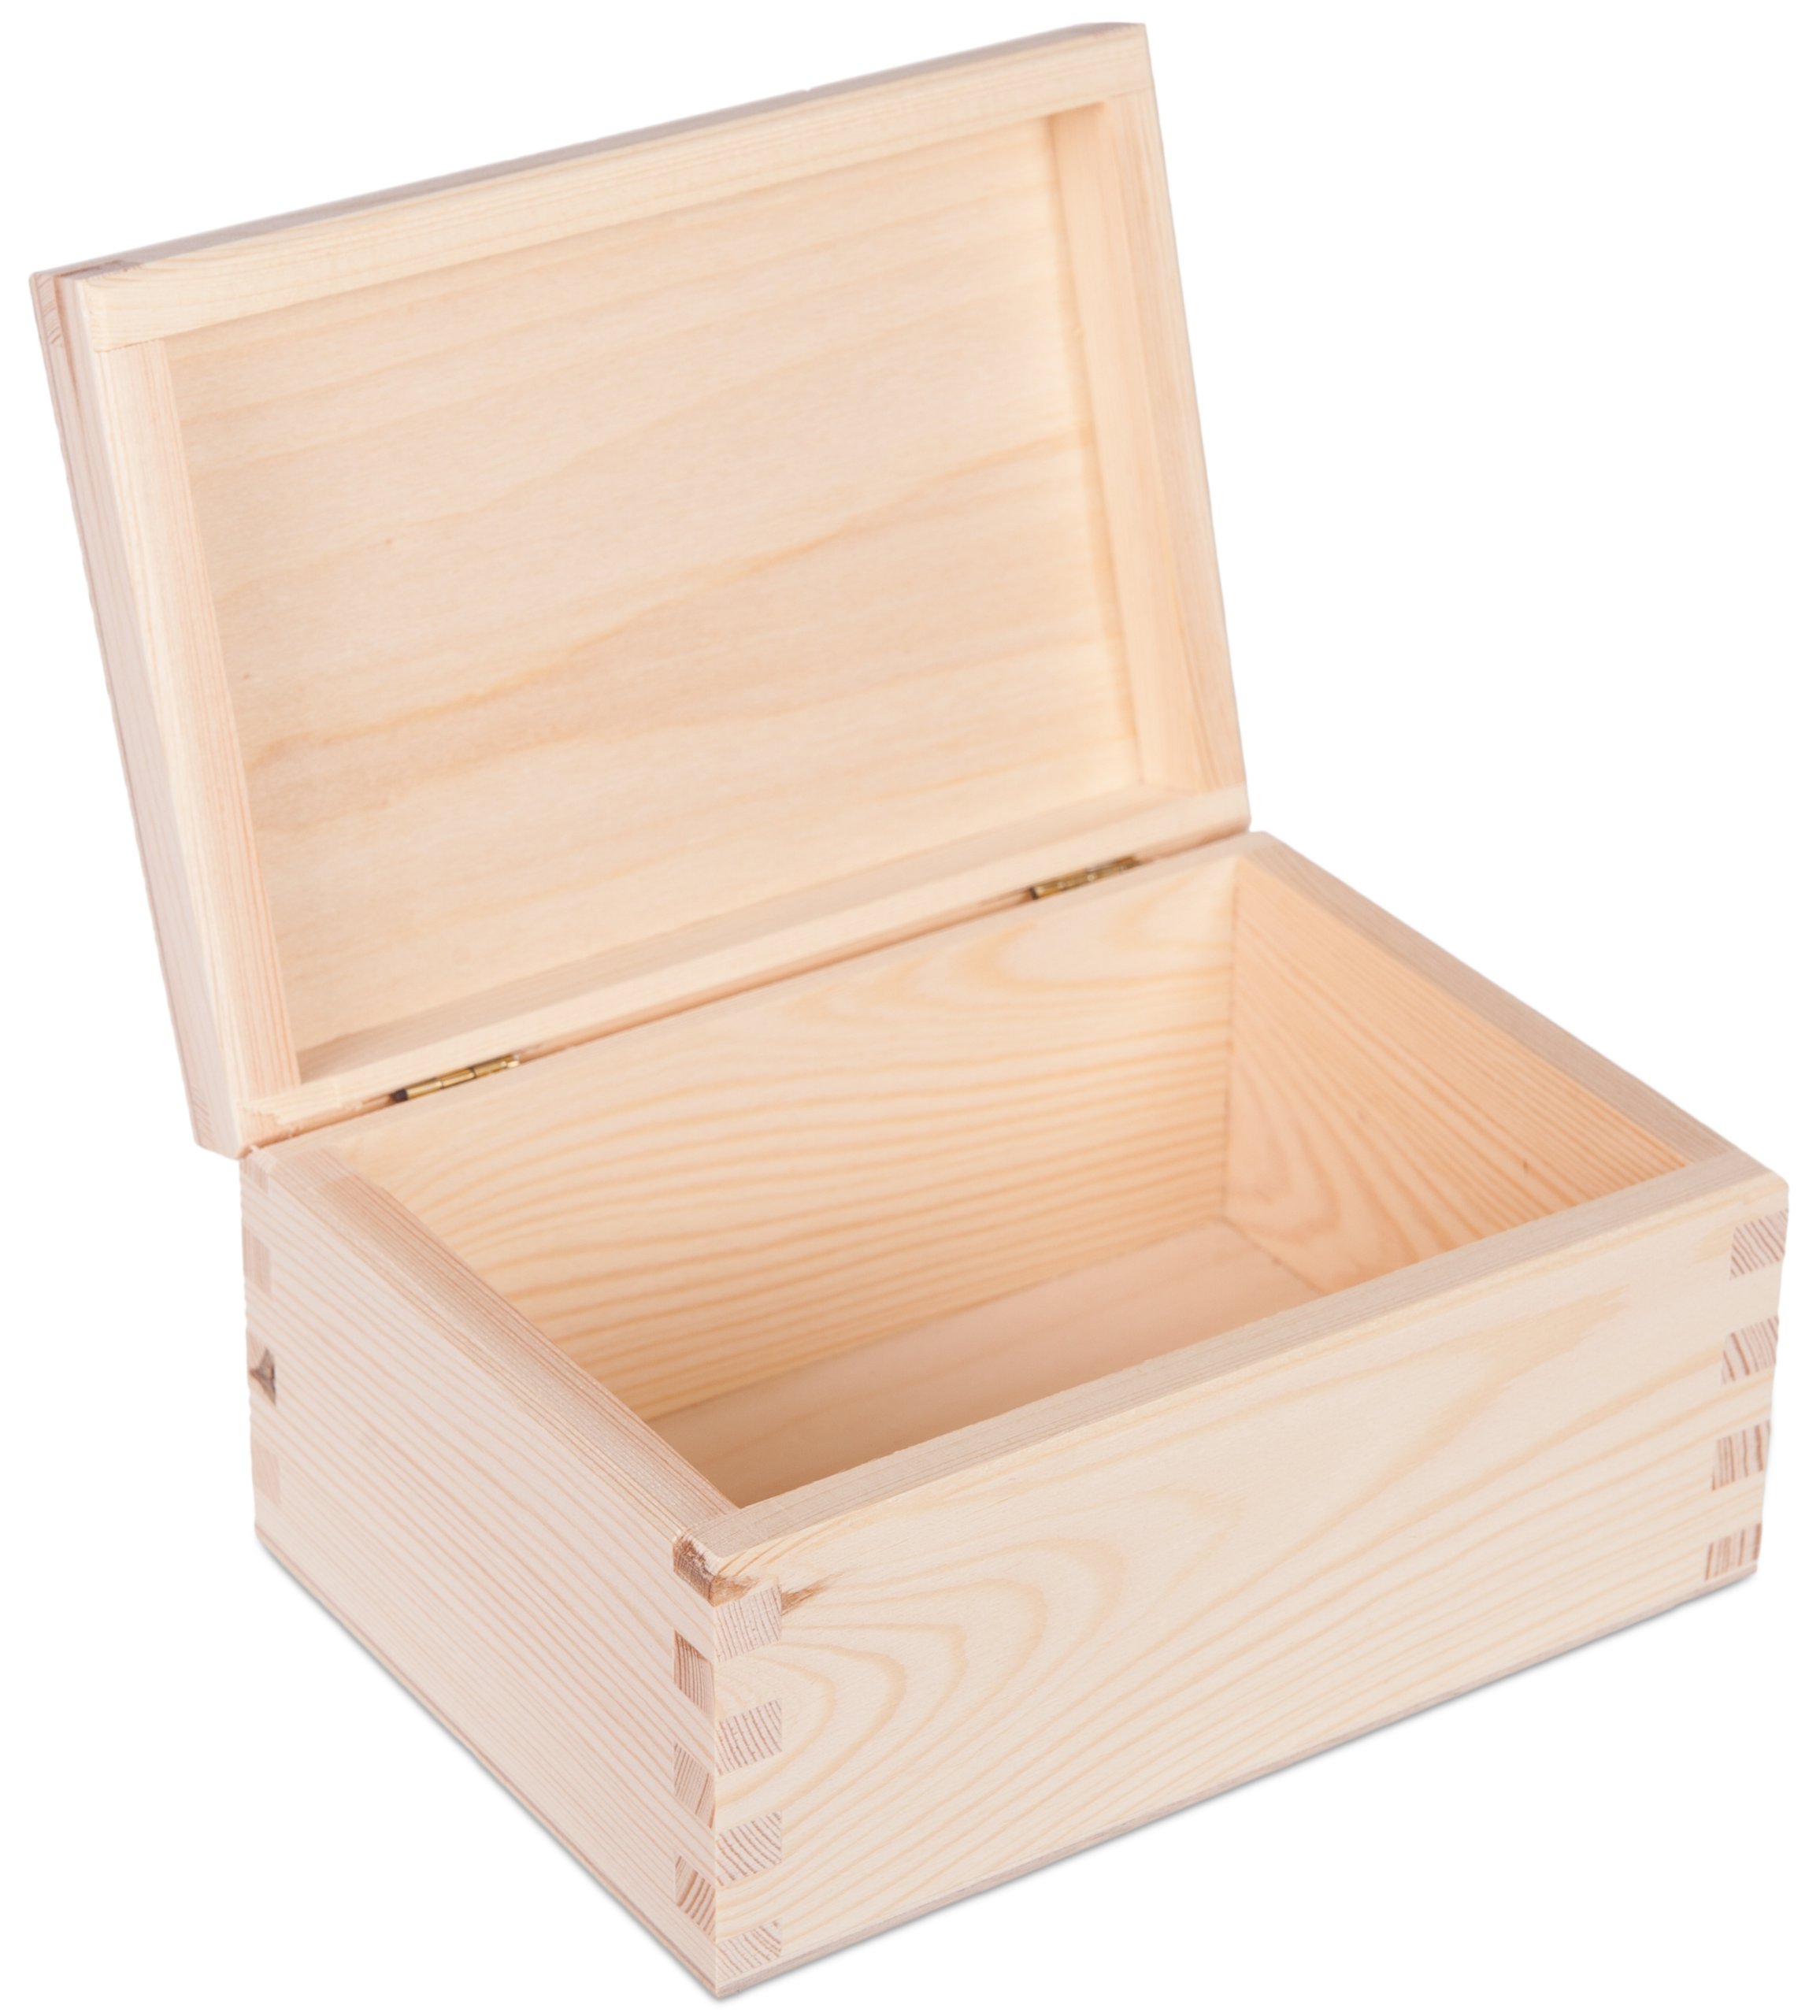 Деревянная коробка с крышкой. Шкатулка деревянная jw931c. Деревянная шкатулка икеа. Ящик деревянный 25.5x15.5x10 см 057374. Шкатулка деревянная заготовка.